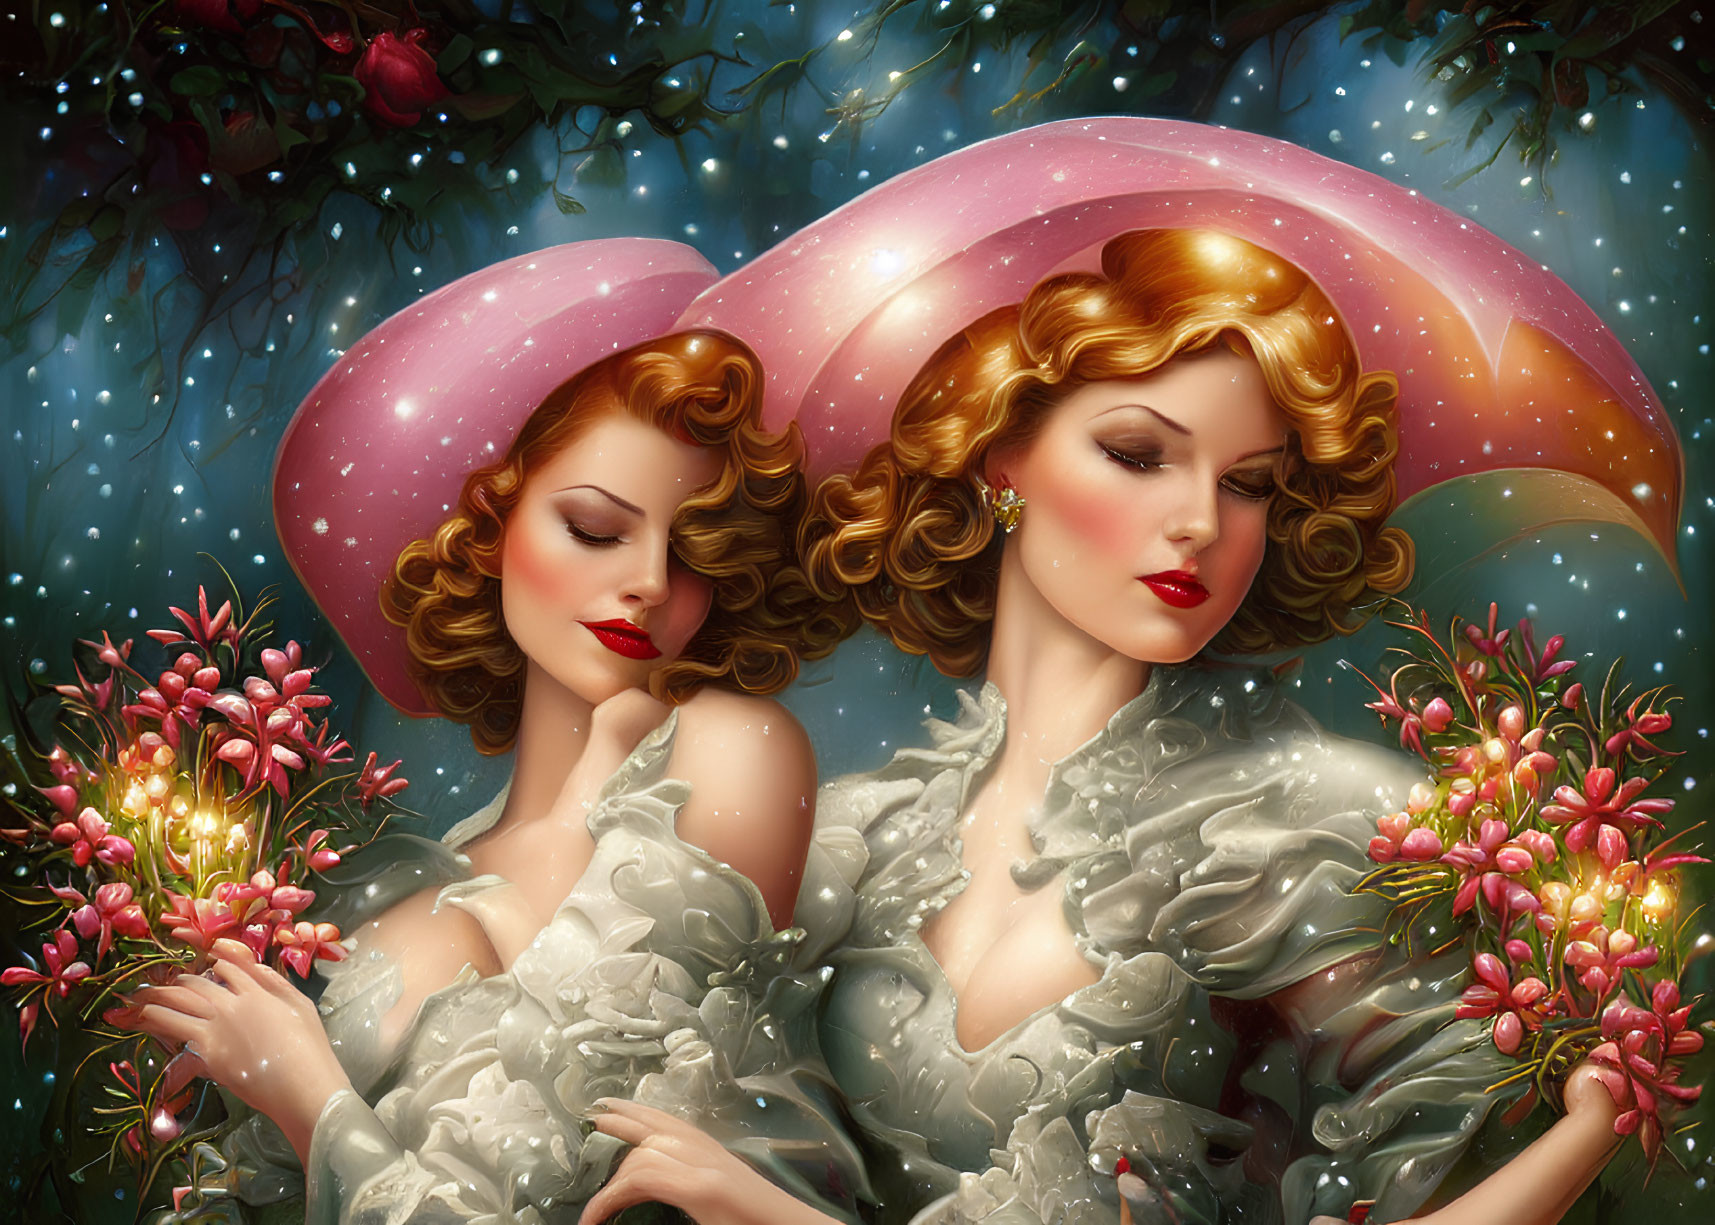 Illustrated women in stylish hats among blooming flowers in dreamlike scene